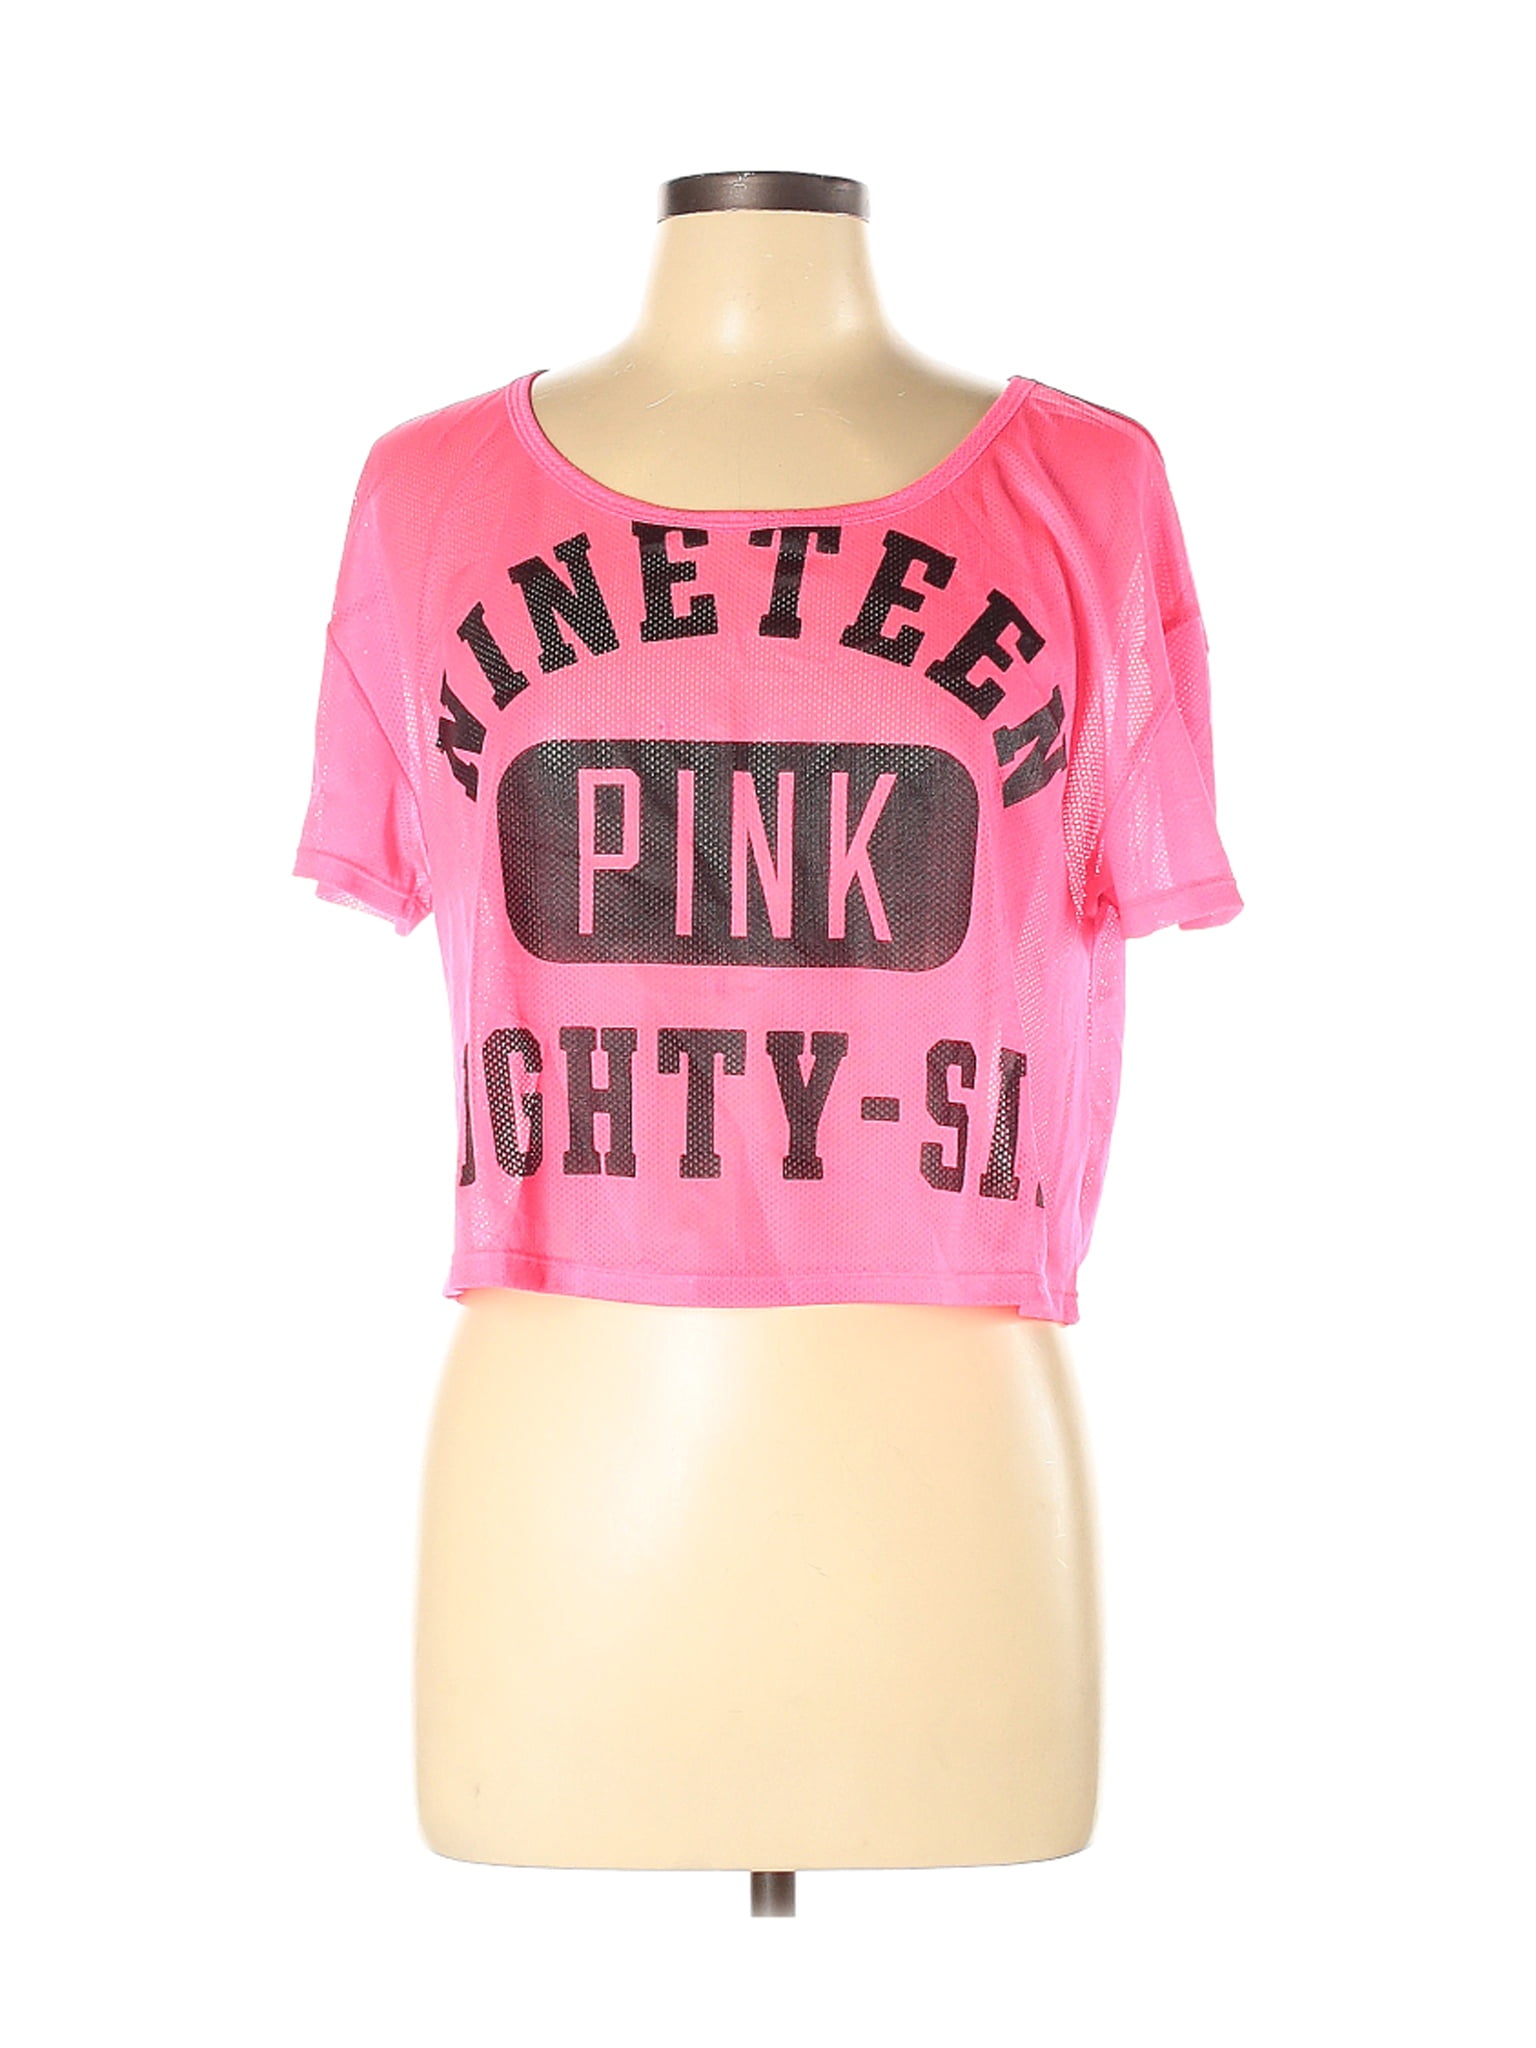 victoria secret pink plus size shirts